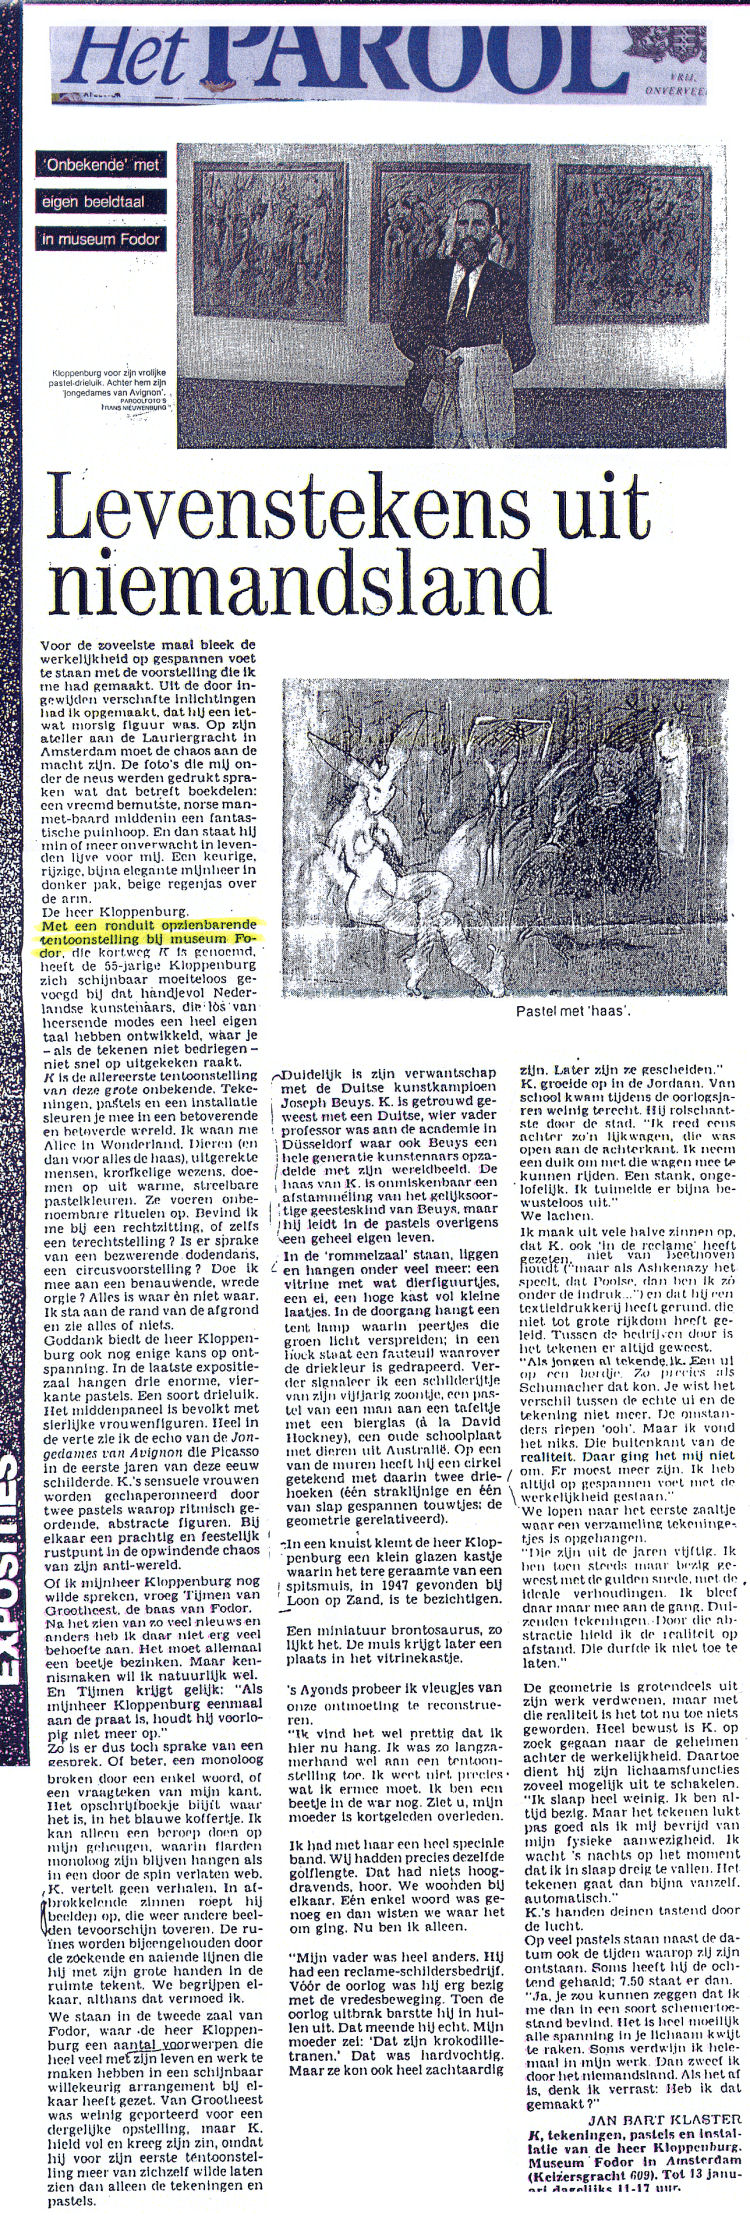 1985 - 24 December - Parool